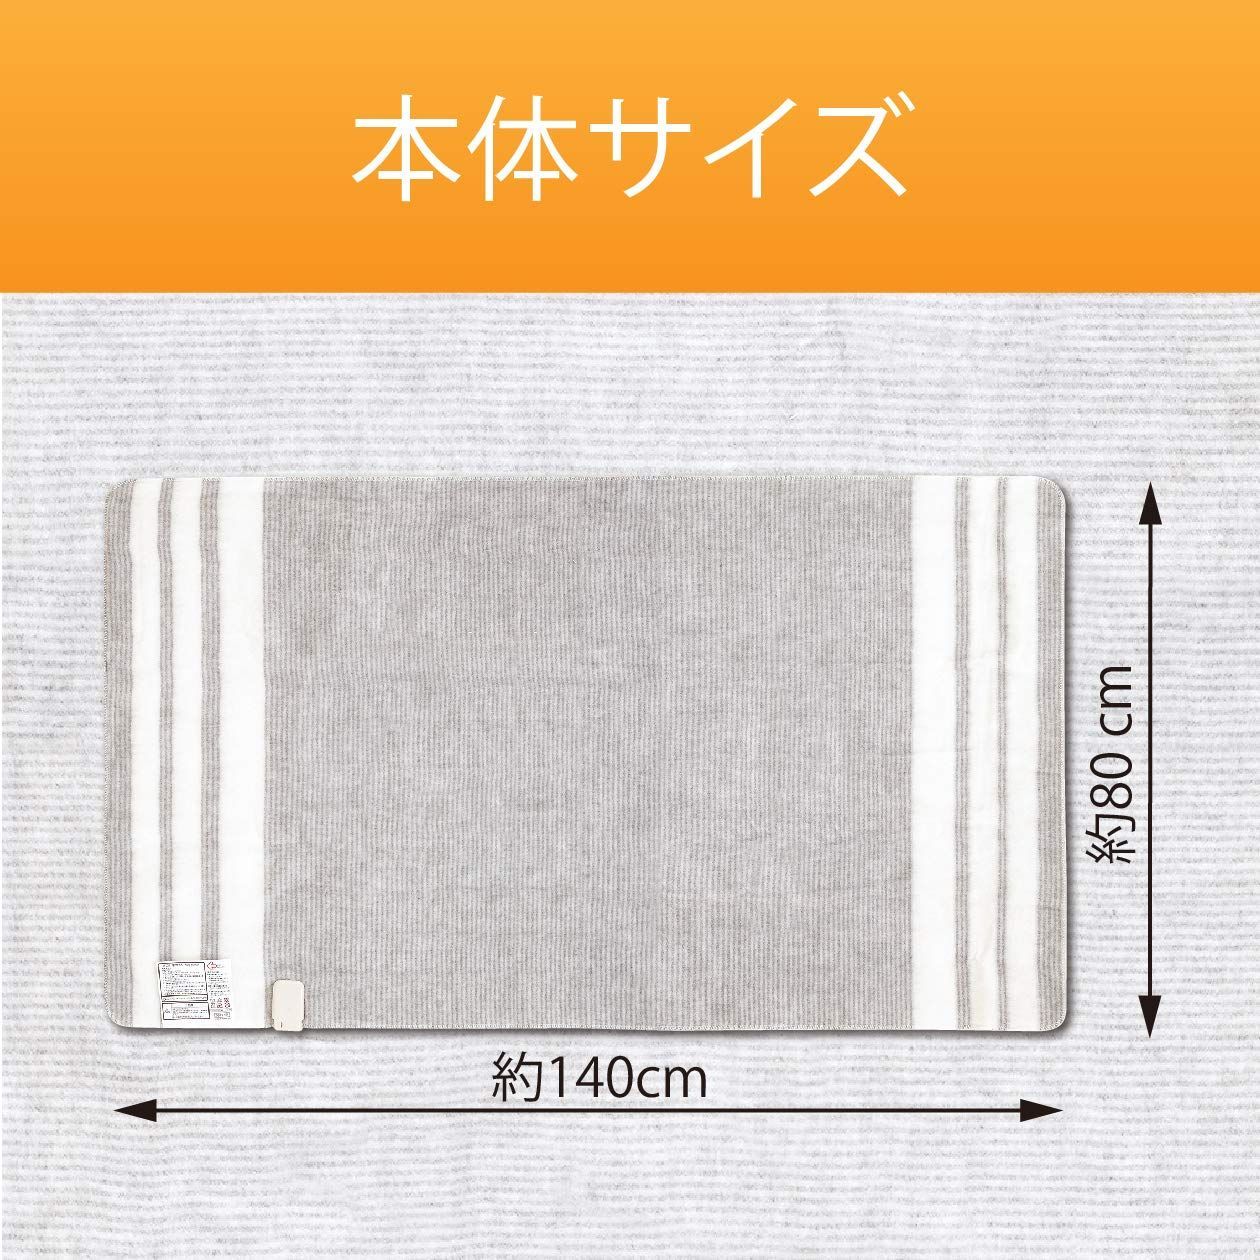 コイズミ 電気毛布 敷毛布 電磁波カット 丸洗い可 140×80cm KDS-5 - さくら SHOP ☑ - メルカリ